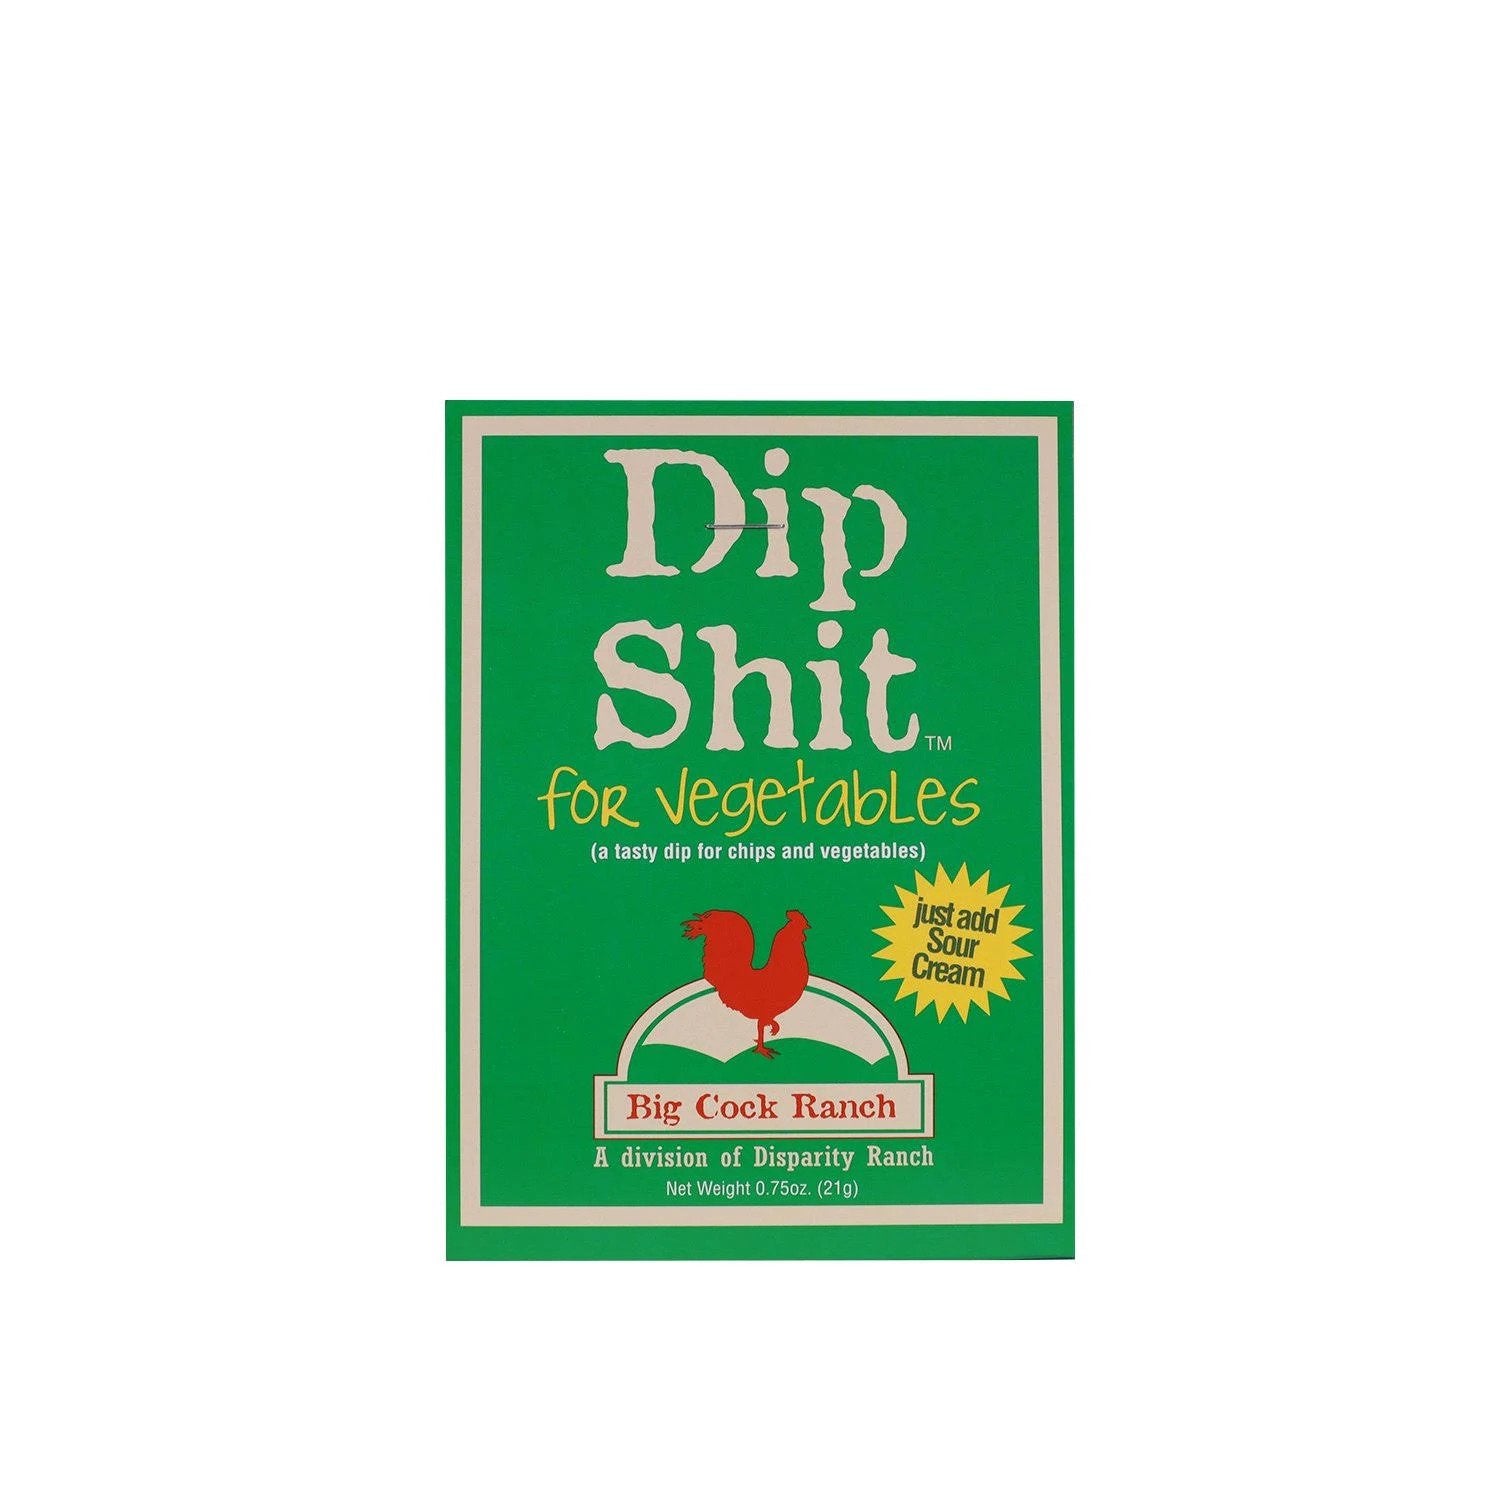 Dip Sh!t for Veggies